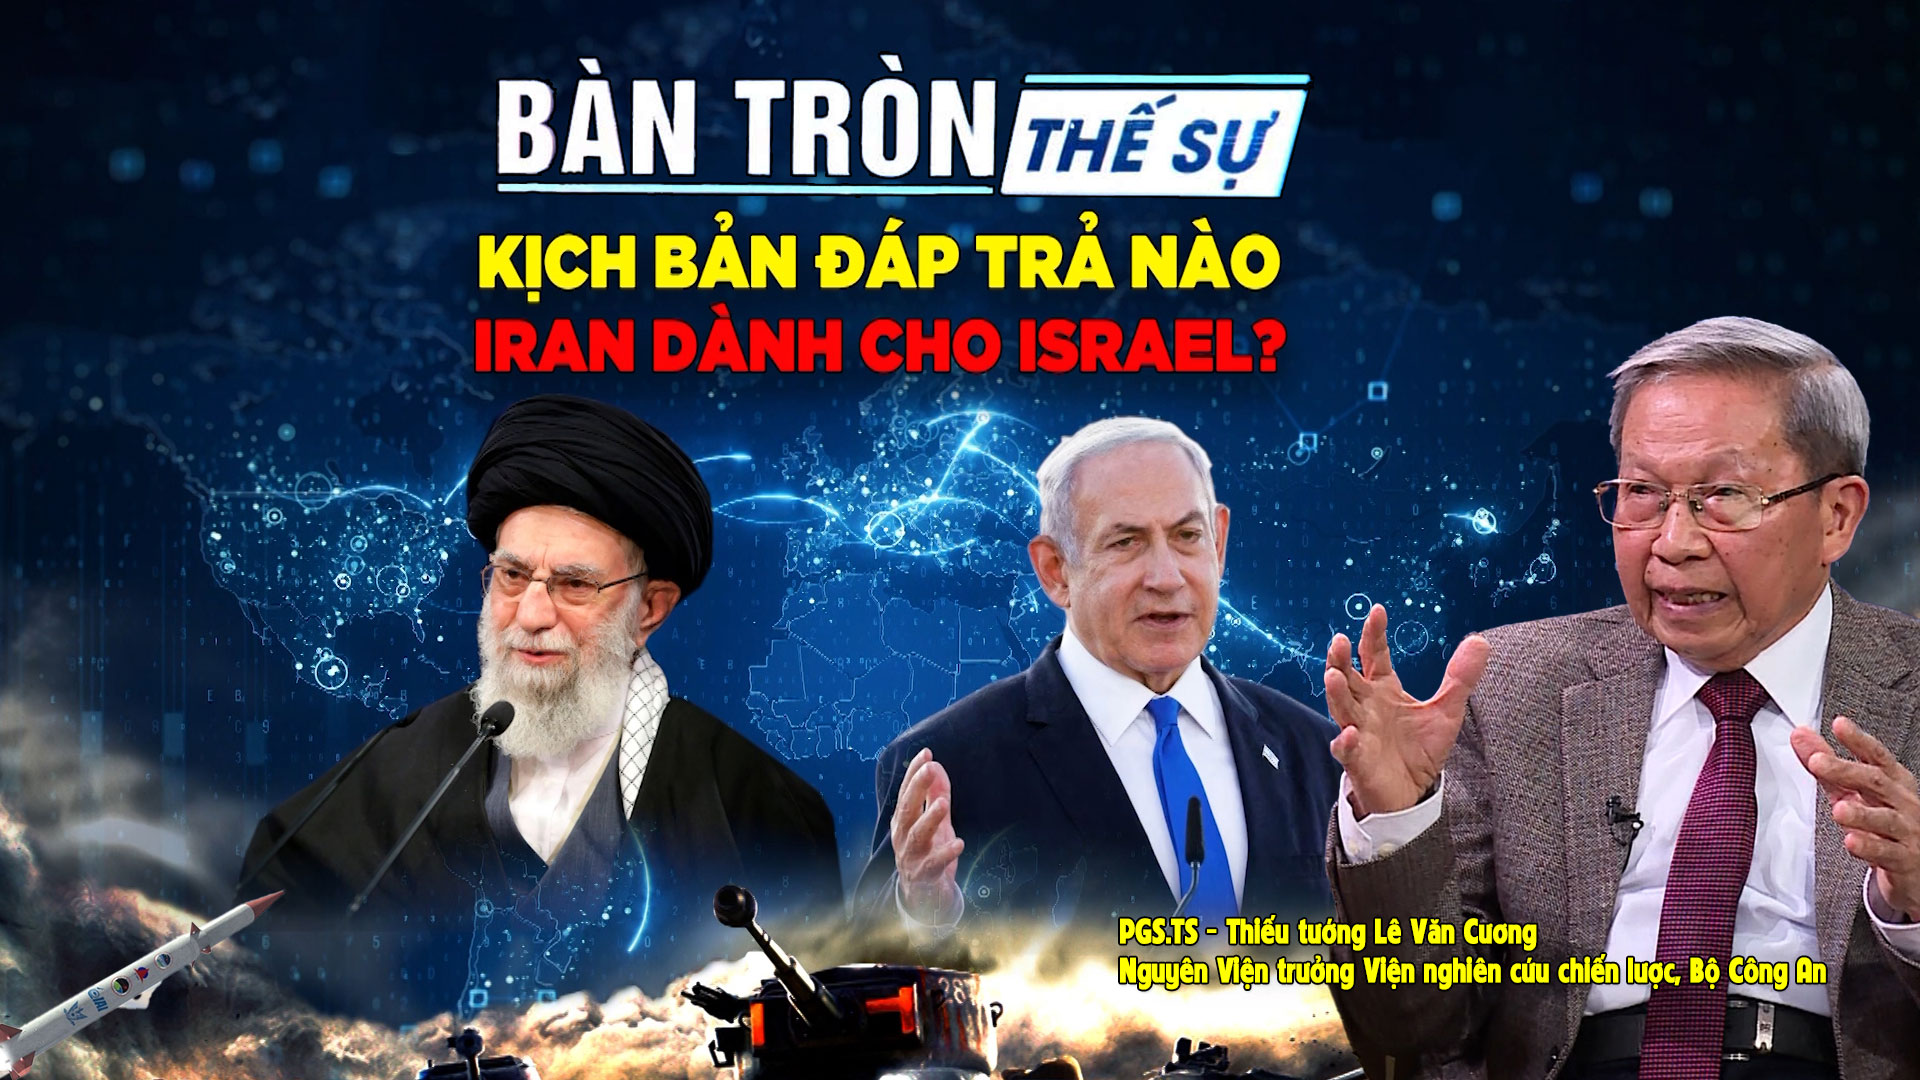 Bàn tròn thế sự: Kịch bản đáp trả nào IRAN dành cho ISRAEL?